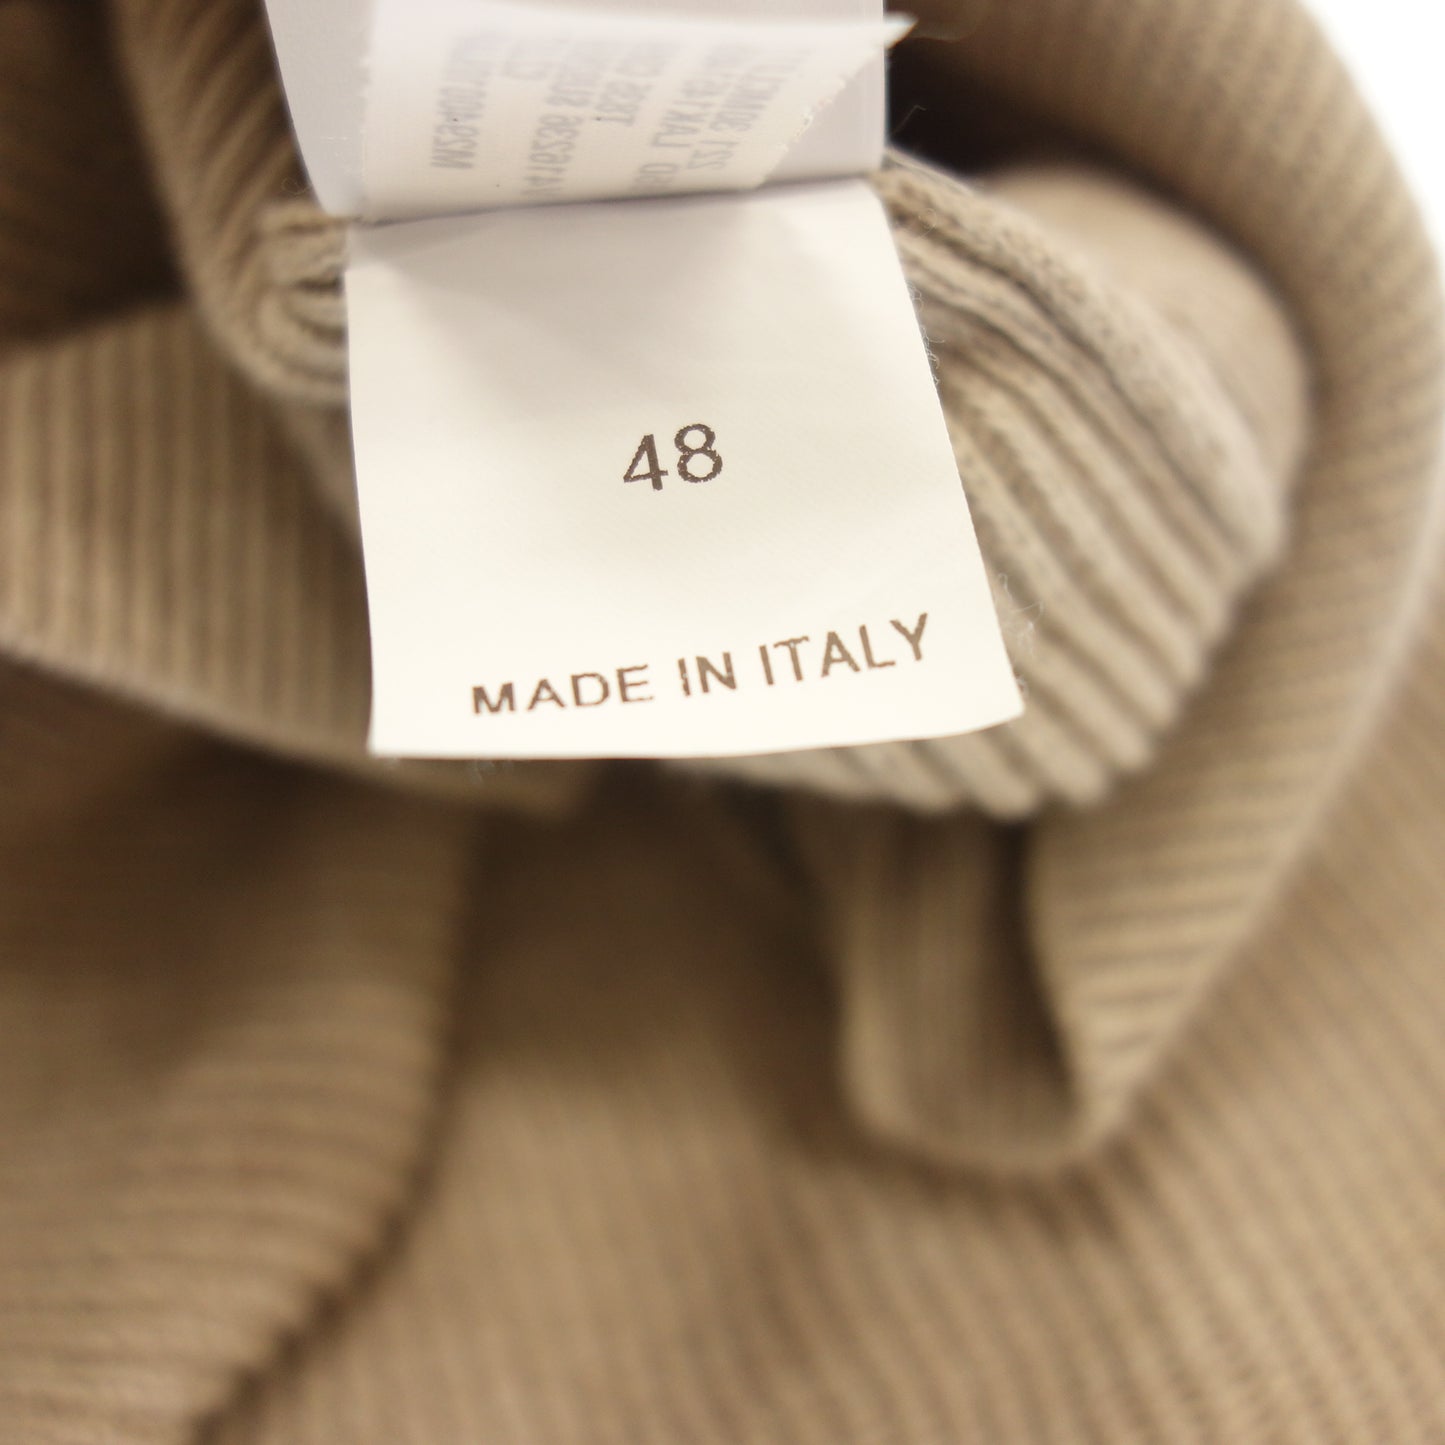 状况良好◆Brunello Cucinelli 针织派克大衣棉质套头衫男式米色 48 码 BRUNELLO CUCINELLI [AFB29] 